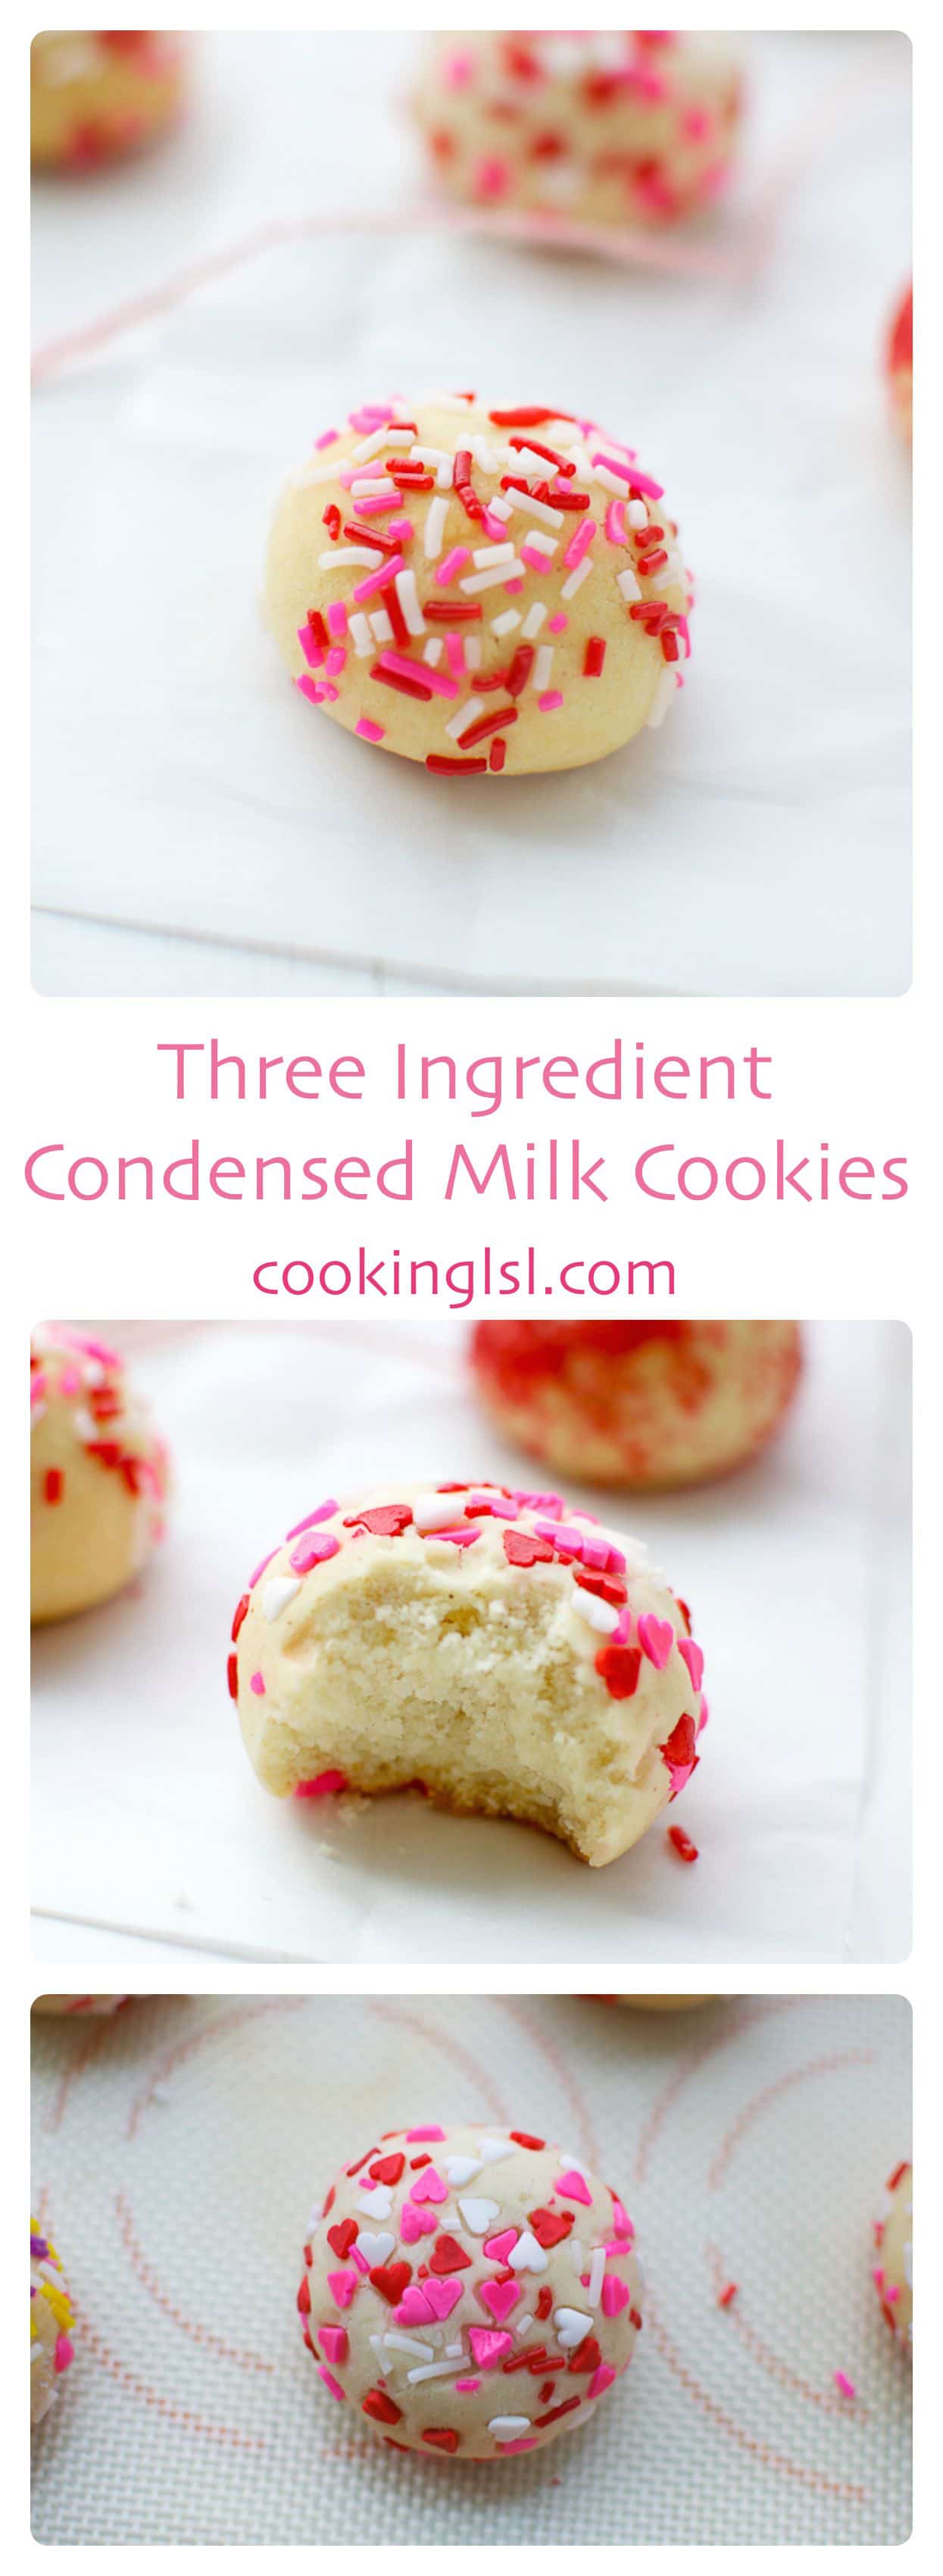 condensed-milk-cookies-three-ingredient